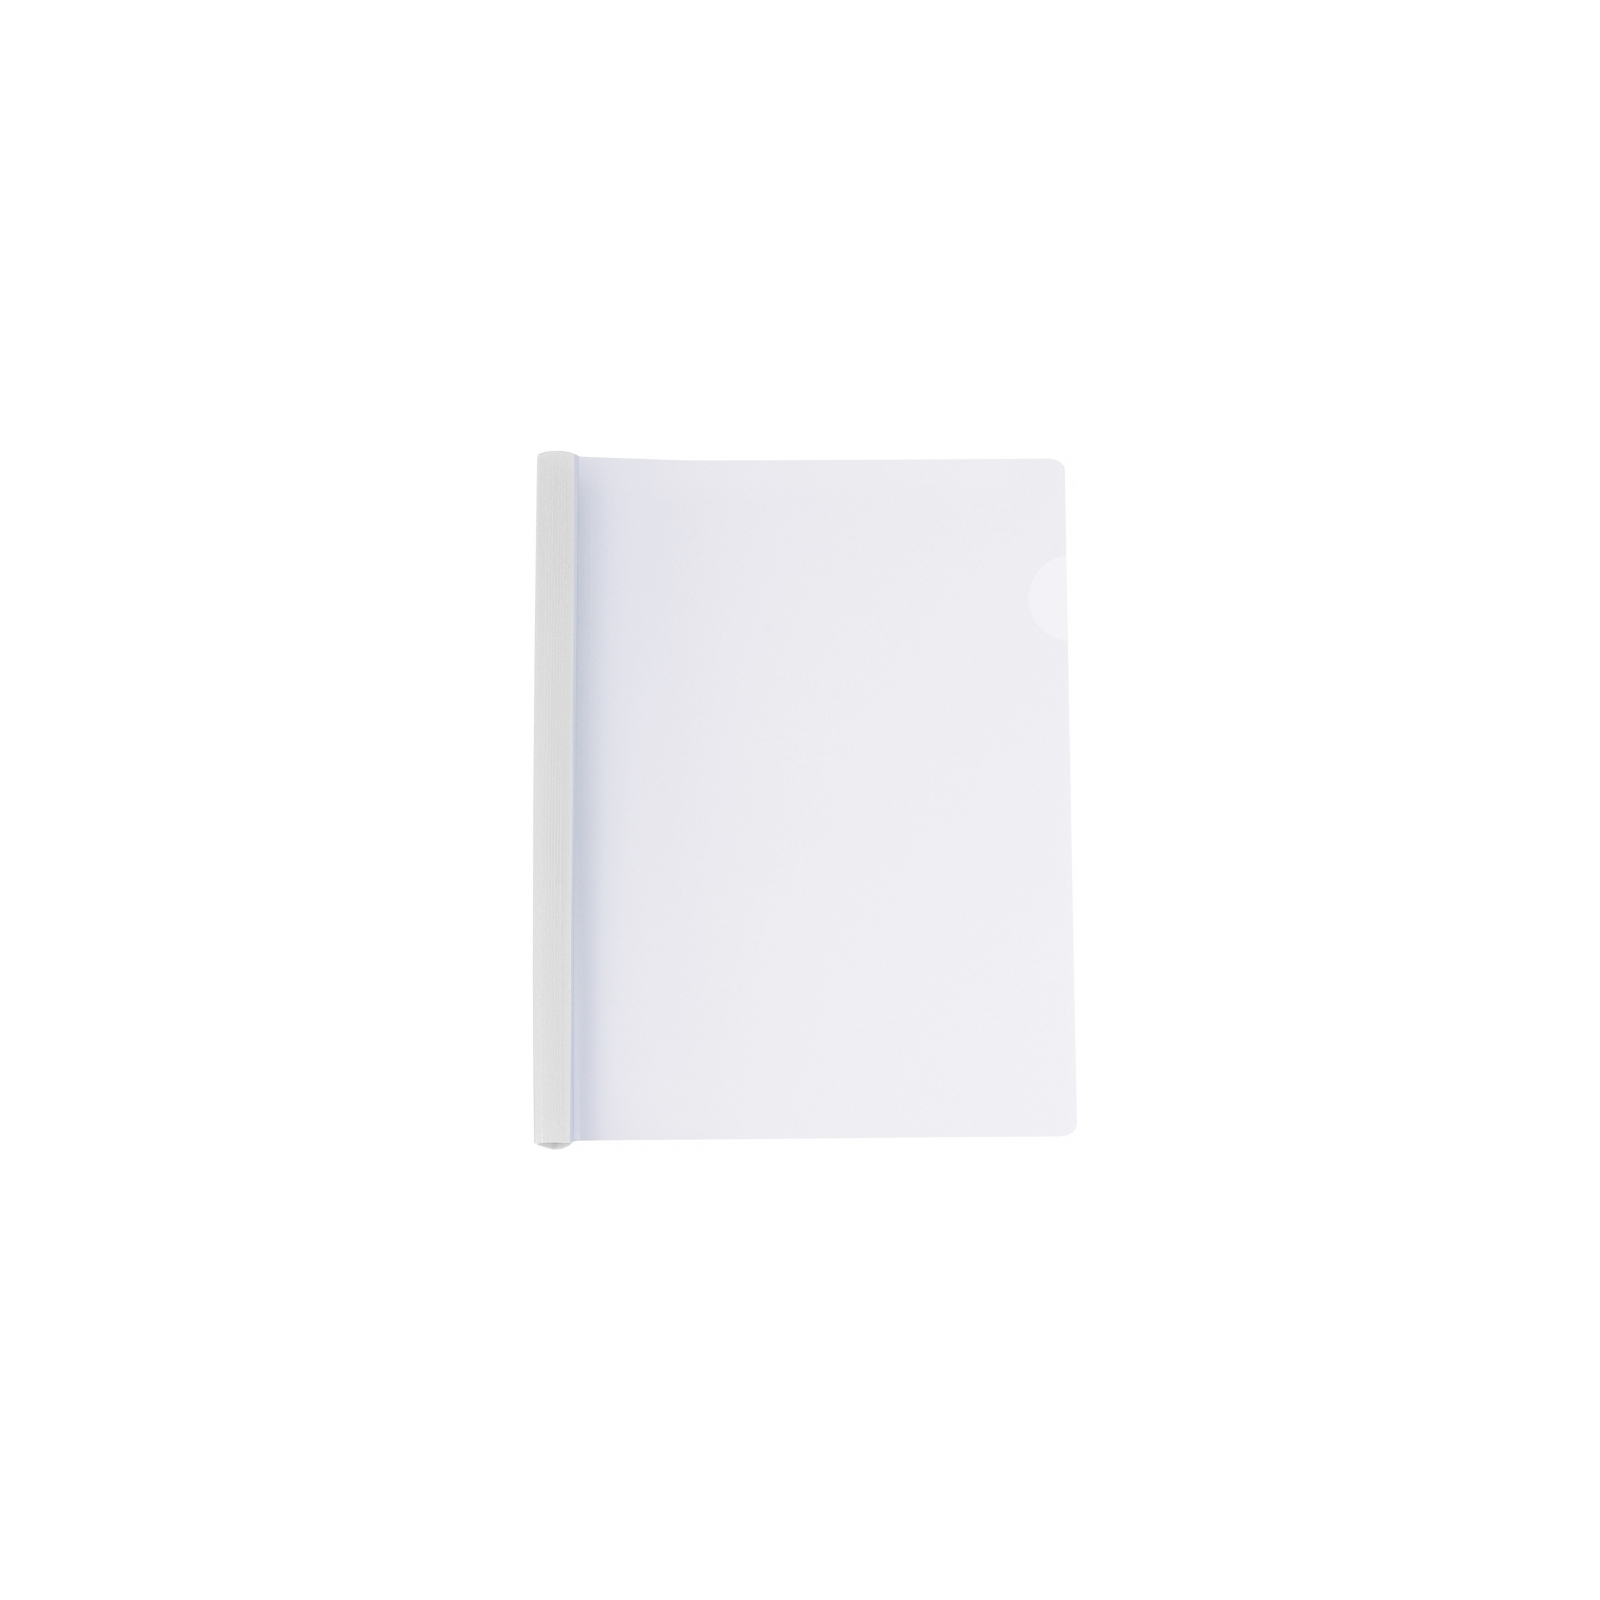 Папка-скоросшиватель Economix А4 с планкой-зажимом 10 мм (2-65 листов), белая (E31205-14)